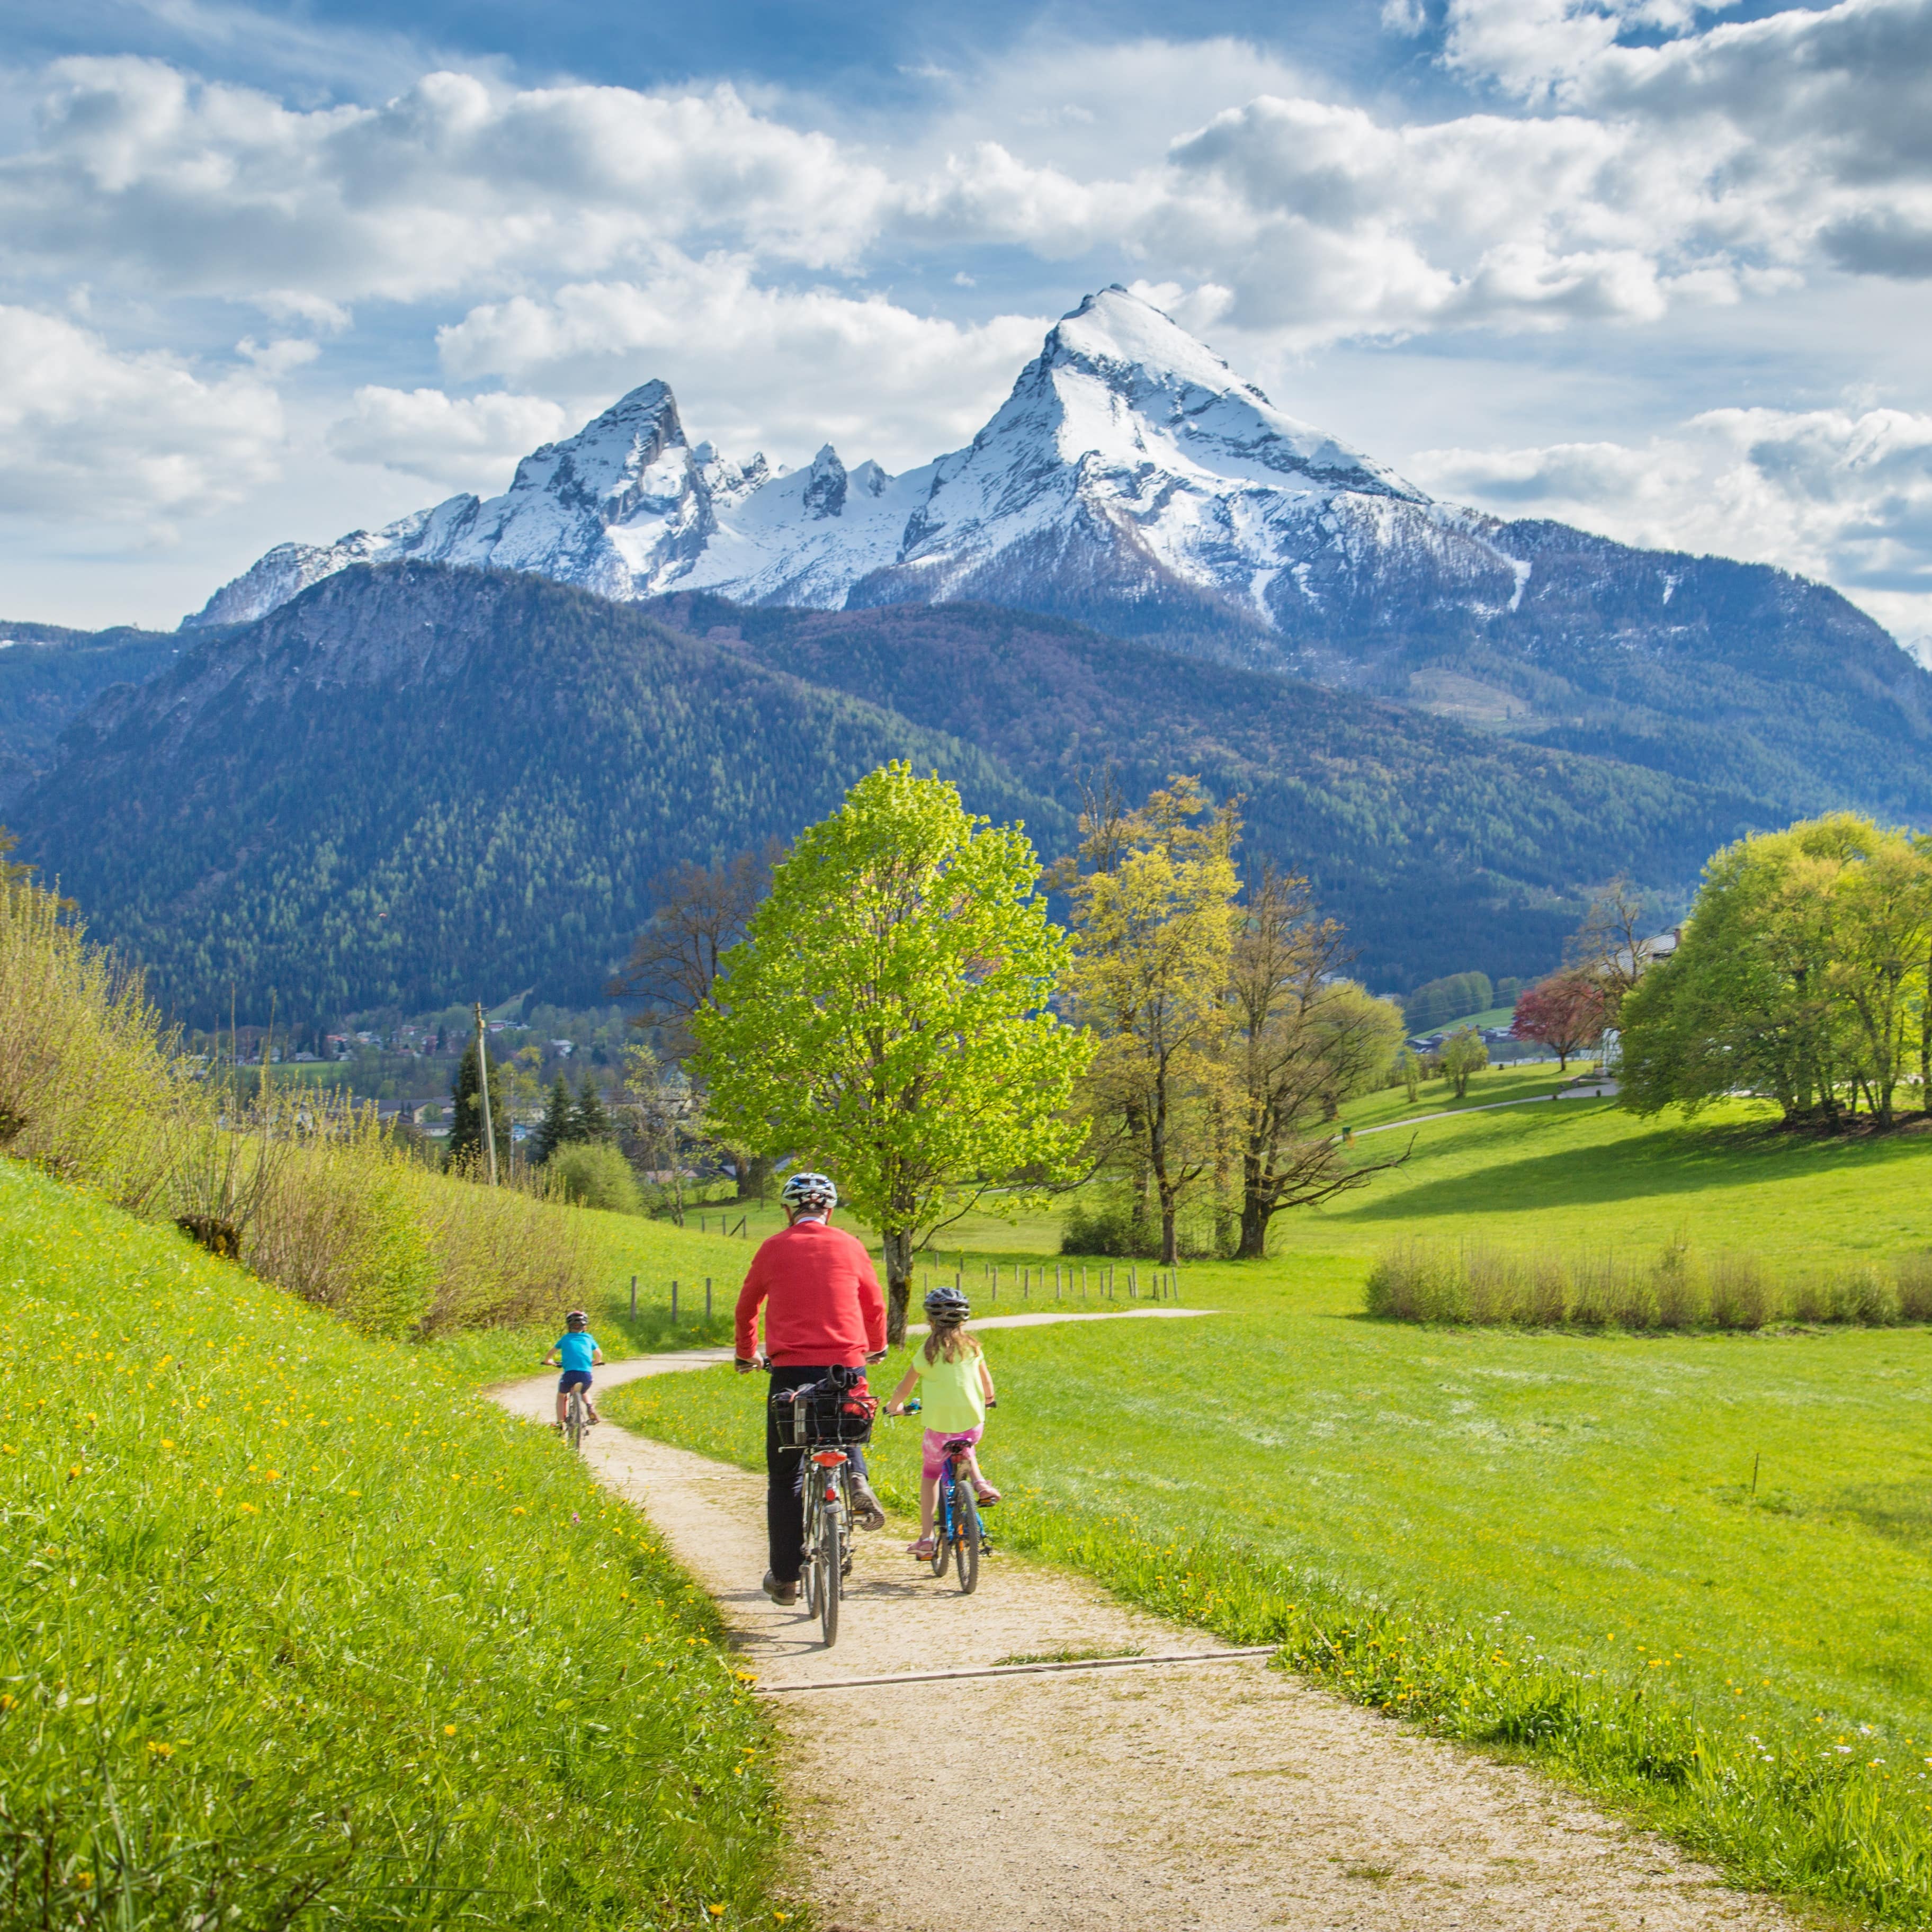 Rückenansicht: Vater und 2 Kinder fahren mit Fahrrädern einen Weg durch die grüne Landschaft entlang.